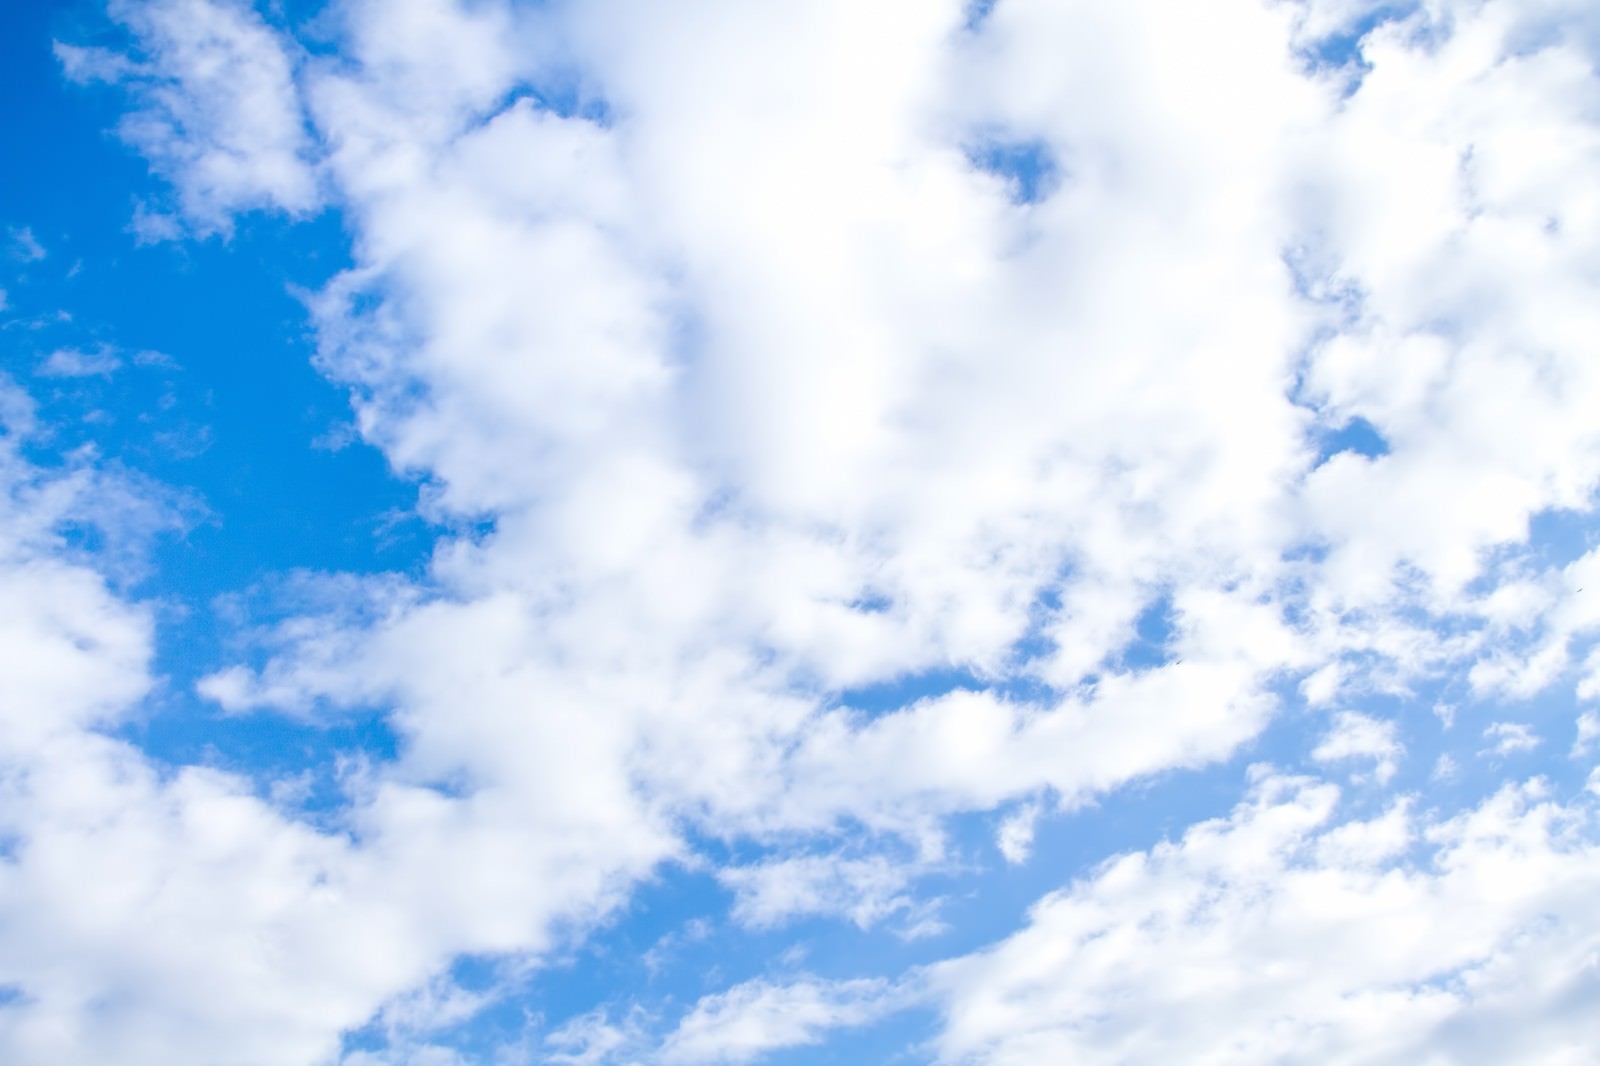 「青空とおぼろ雲」の写真